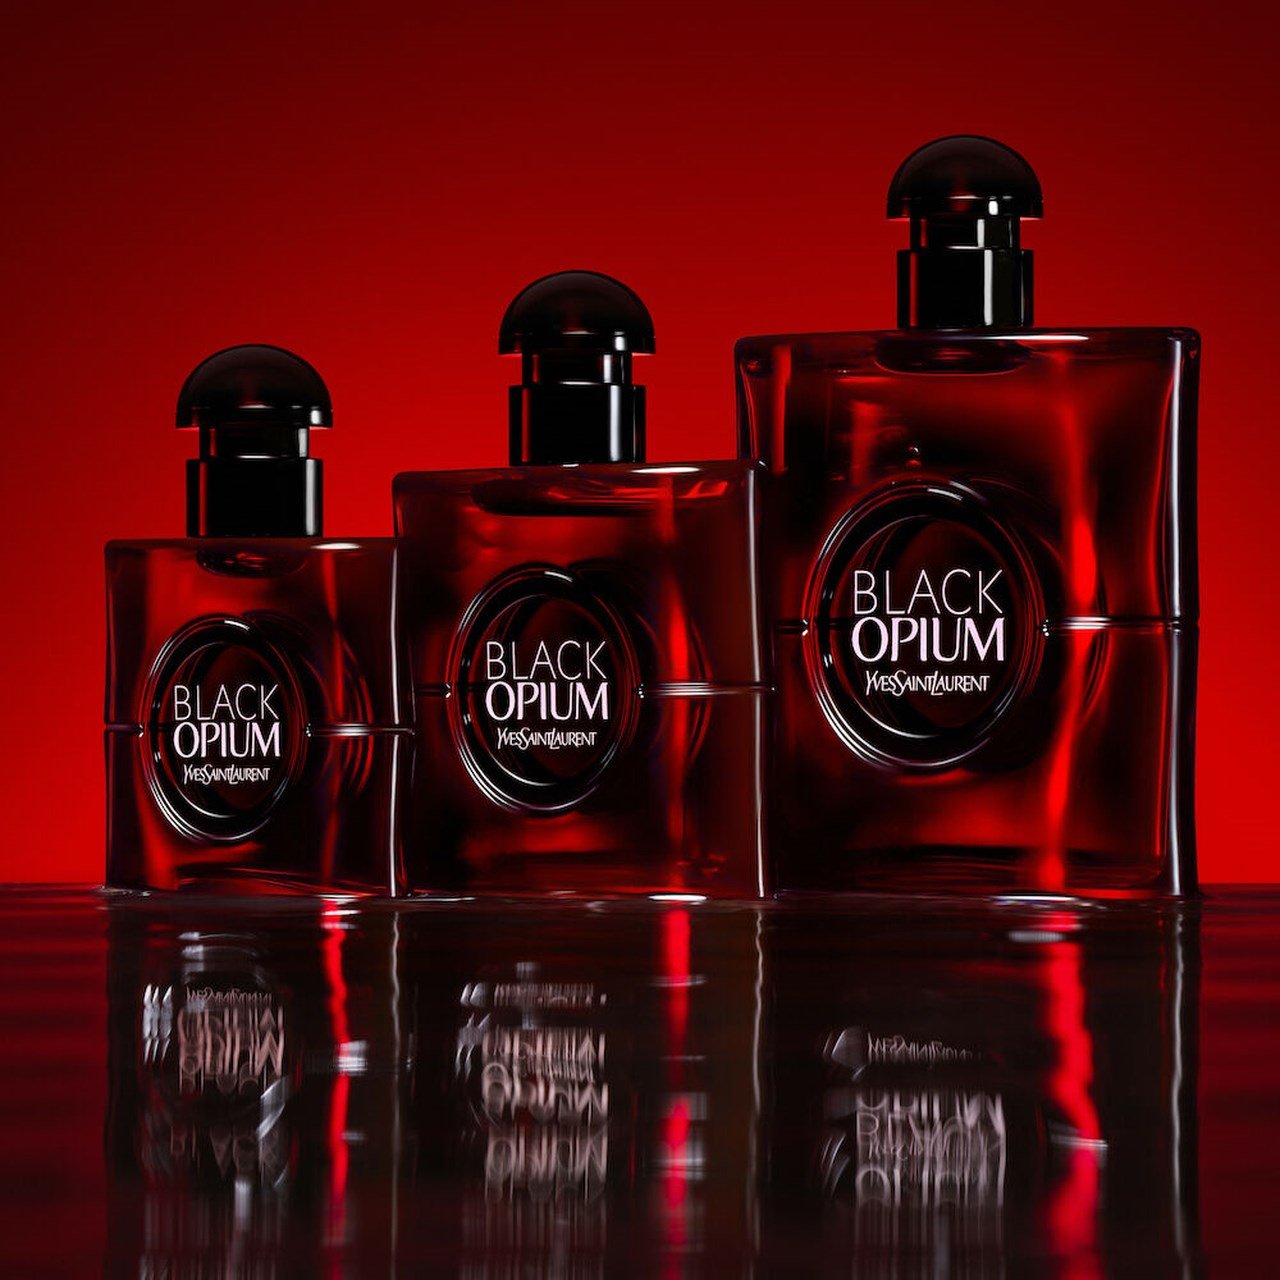 Yves Saint Laurent Black Opium Over Red bottles capacity